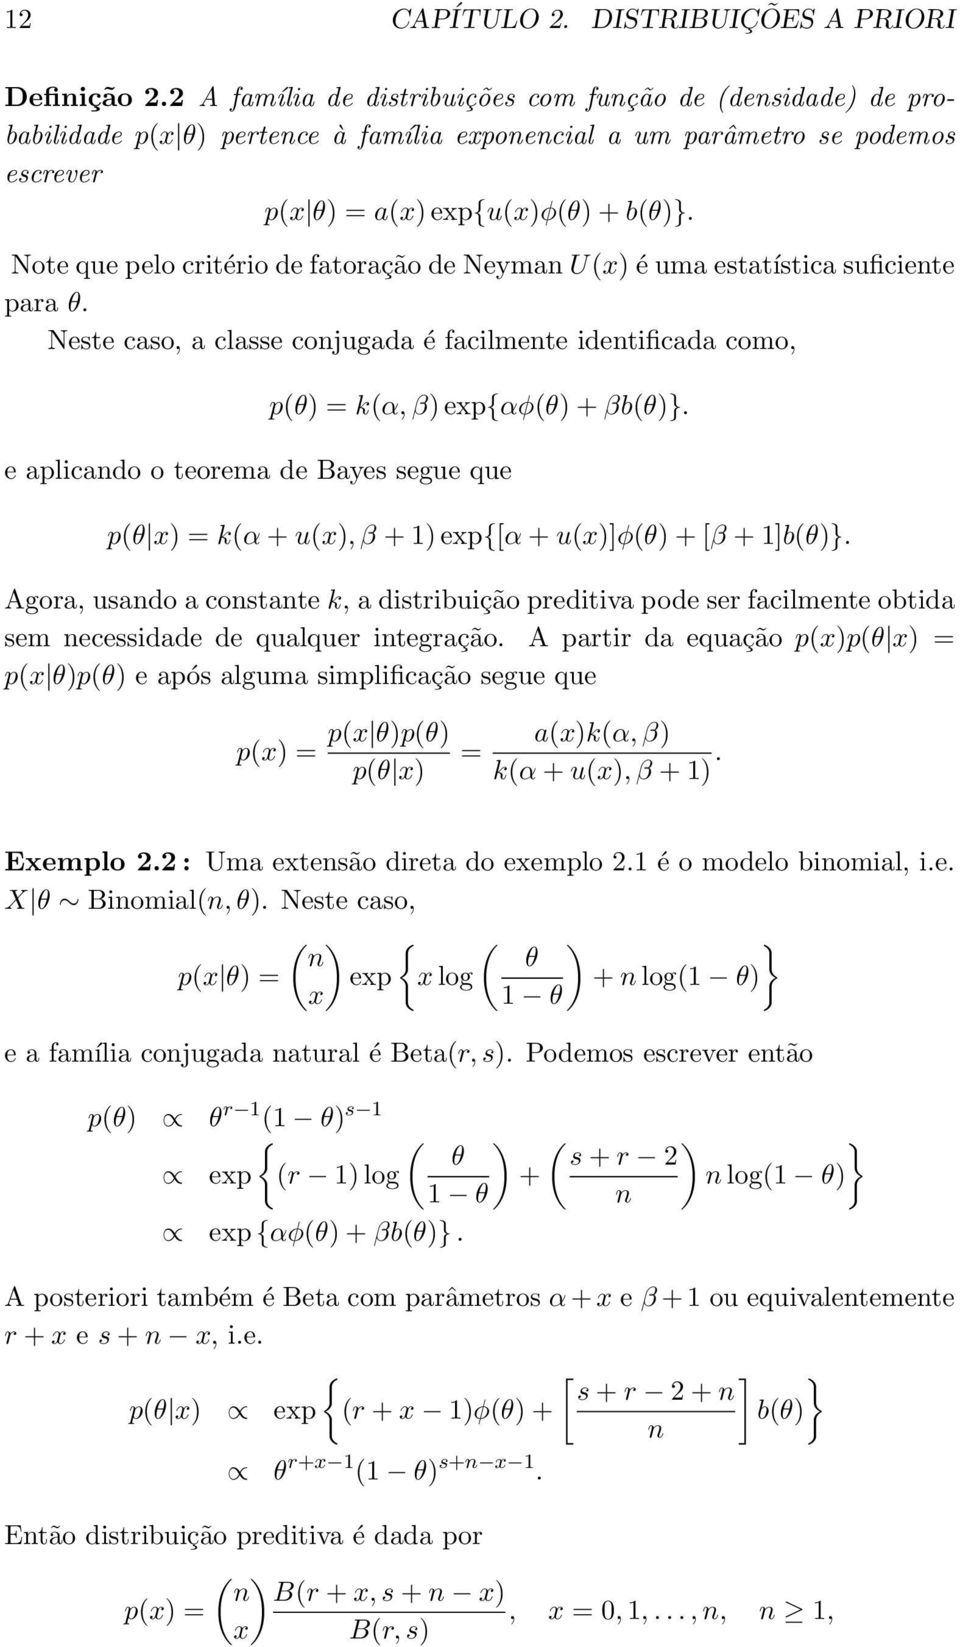 Note que pelo critério de fatoração de Neyman U(x) é uma estatística suficiente para θ. Neste caso, a classe conjugada é facilmente identificada como, p(θ) = k(α, β) exp{αφ(θ) + βb(θ)}.